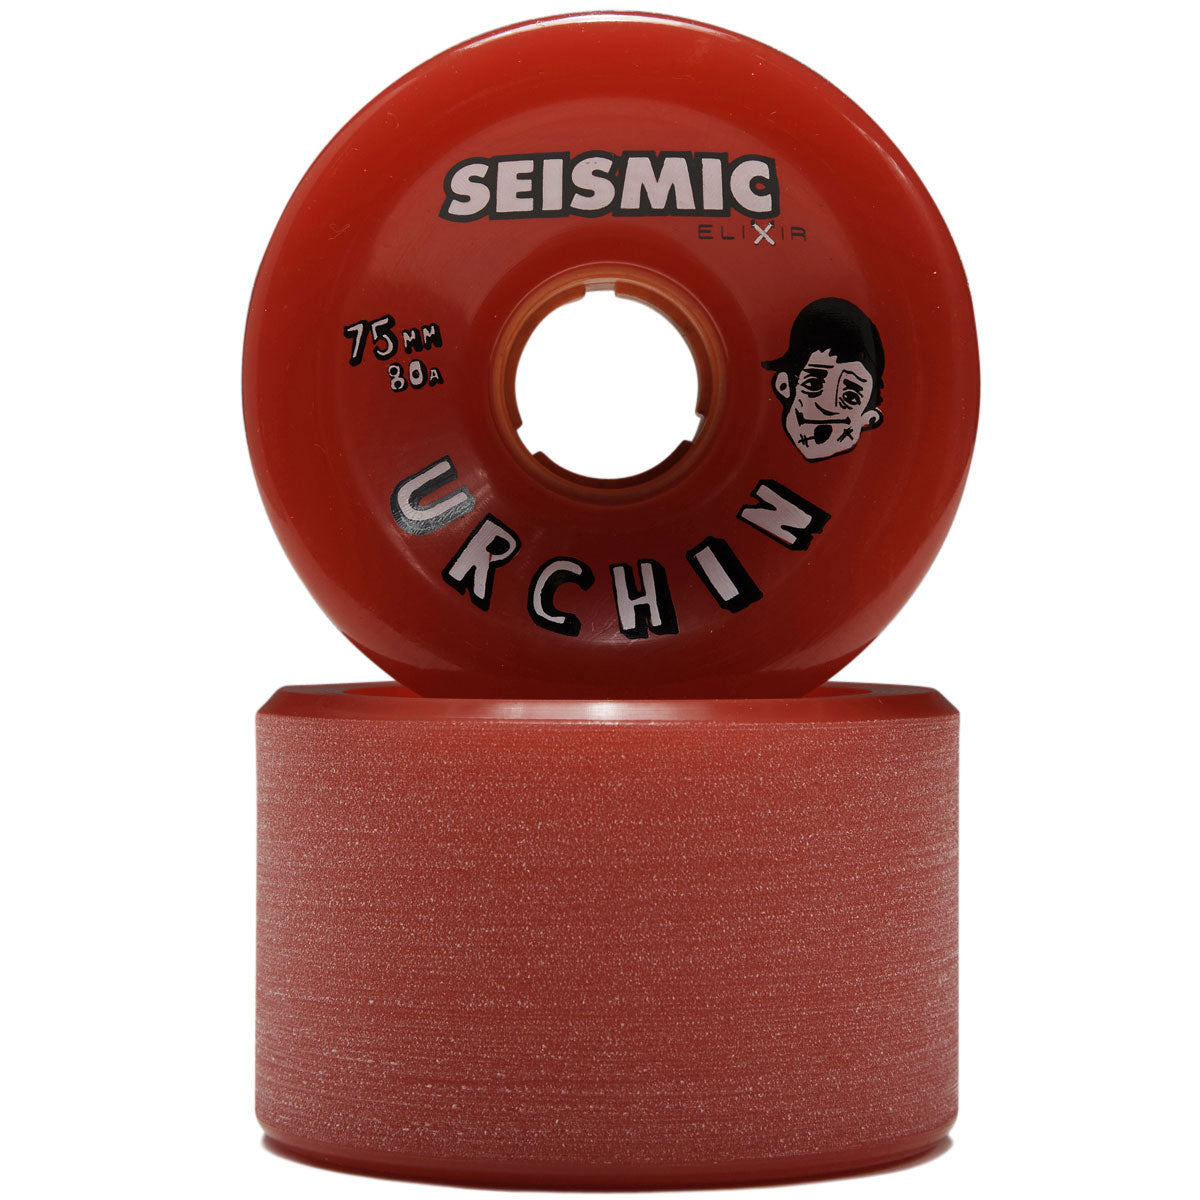 Seismic Urchin 80a Longboard Wheels - Red Elixir - 75mm image 2